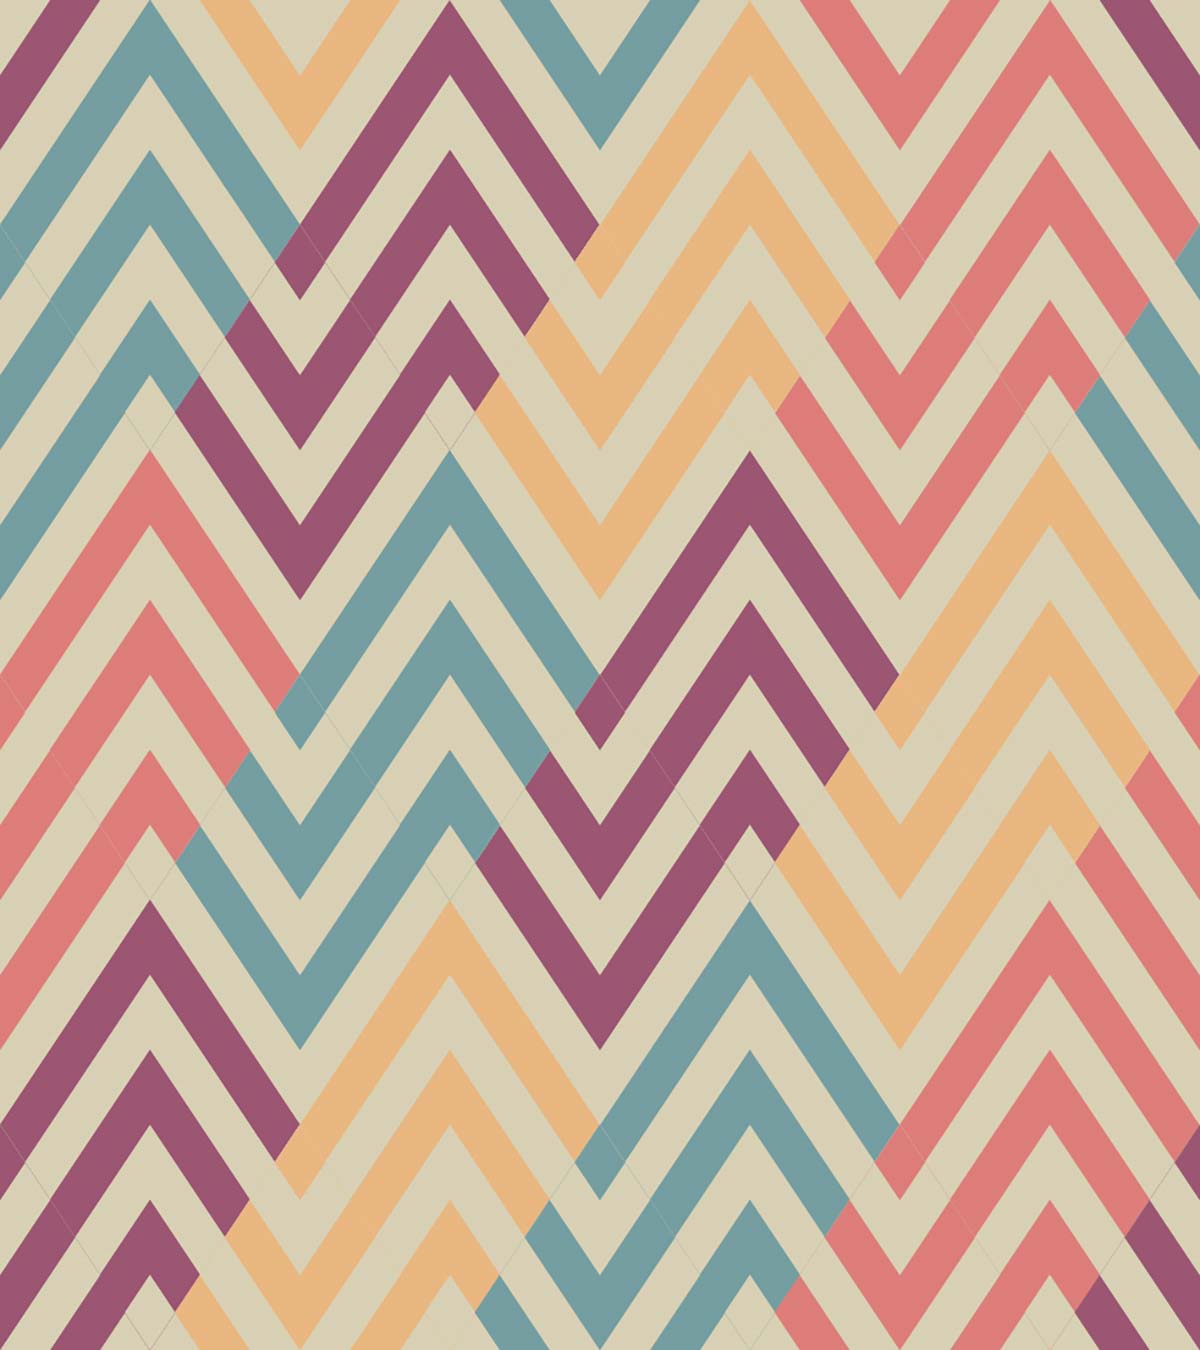 A colorful chevron pattern